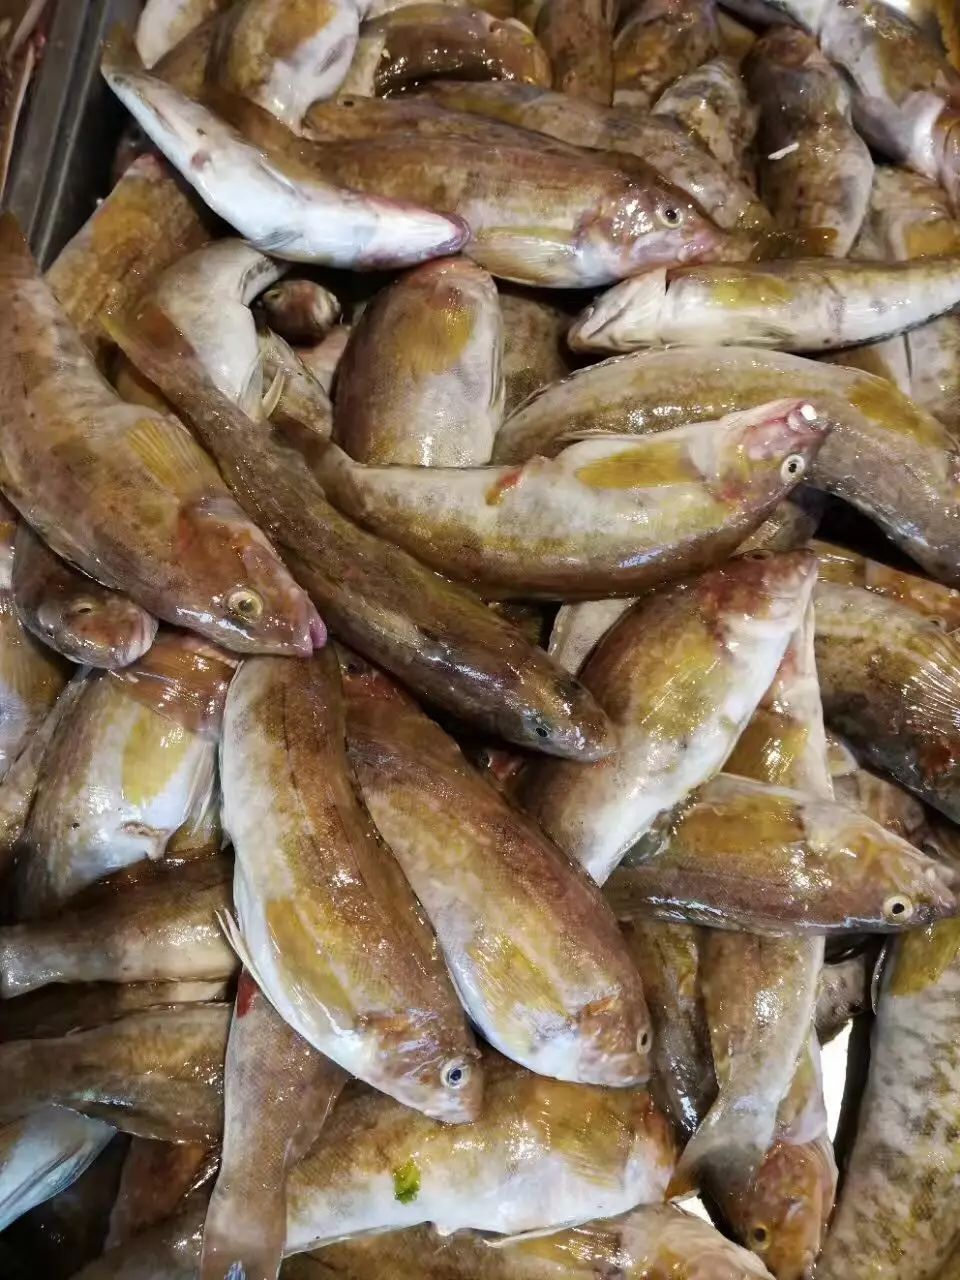 【今日菜单】新鲜海鲜:大黑鱼,小黄鱼,老板鱼,天鹅蛋,鲅鱼.